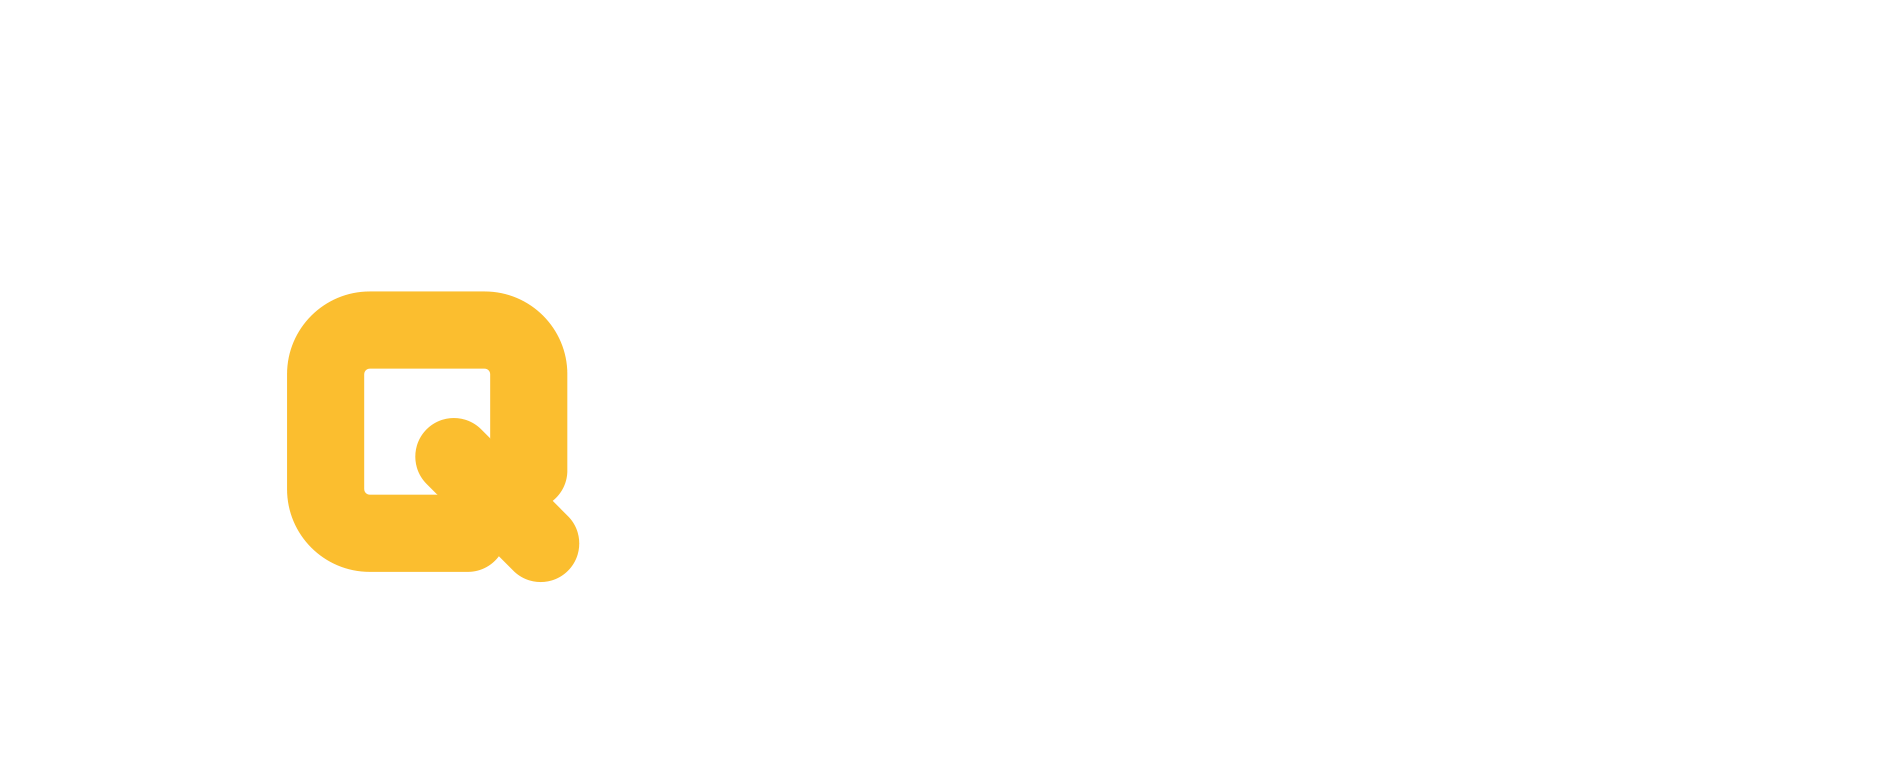 Qubix